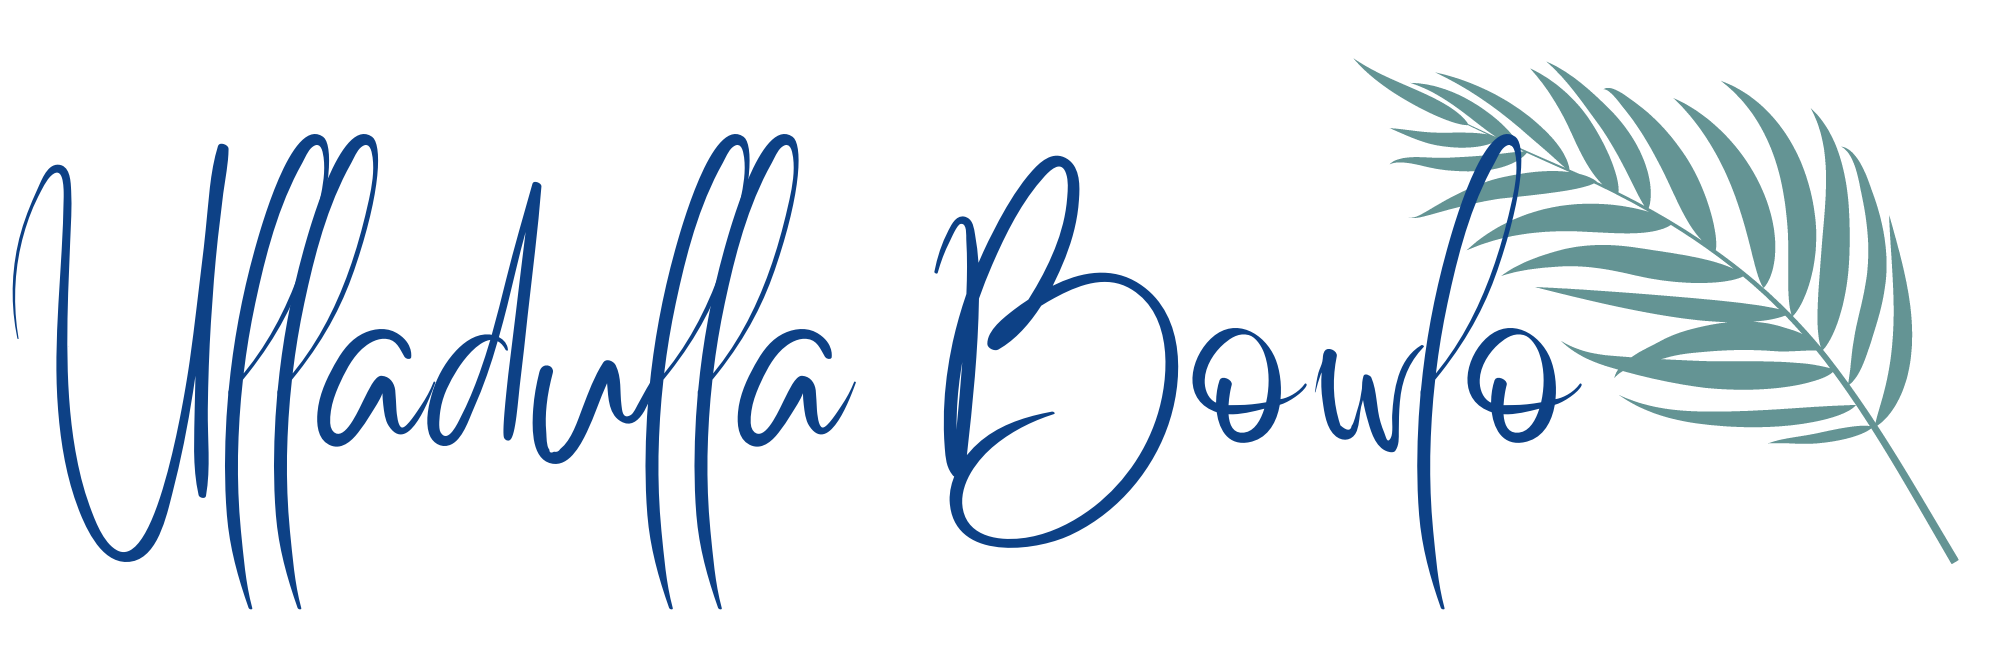 Ulladulla Bowlo logo